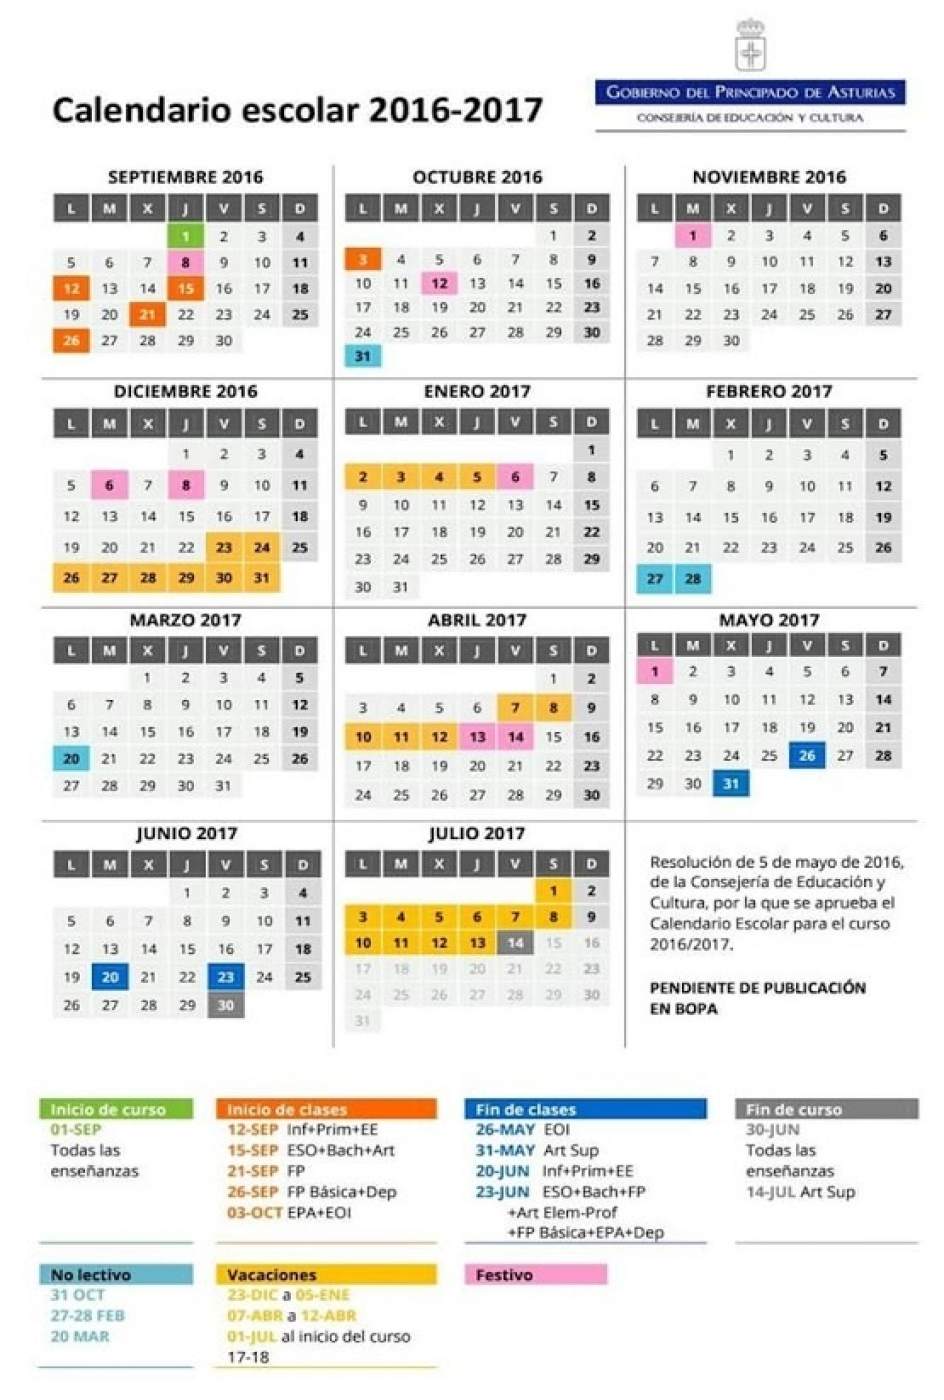 Calendario escolar 2016/17